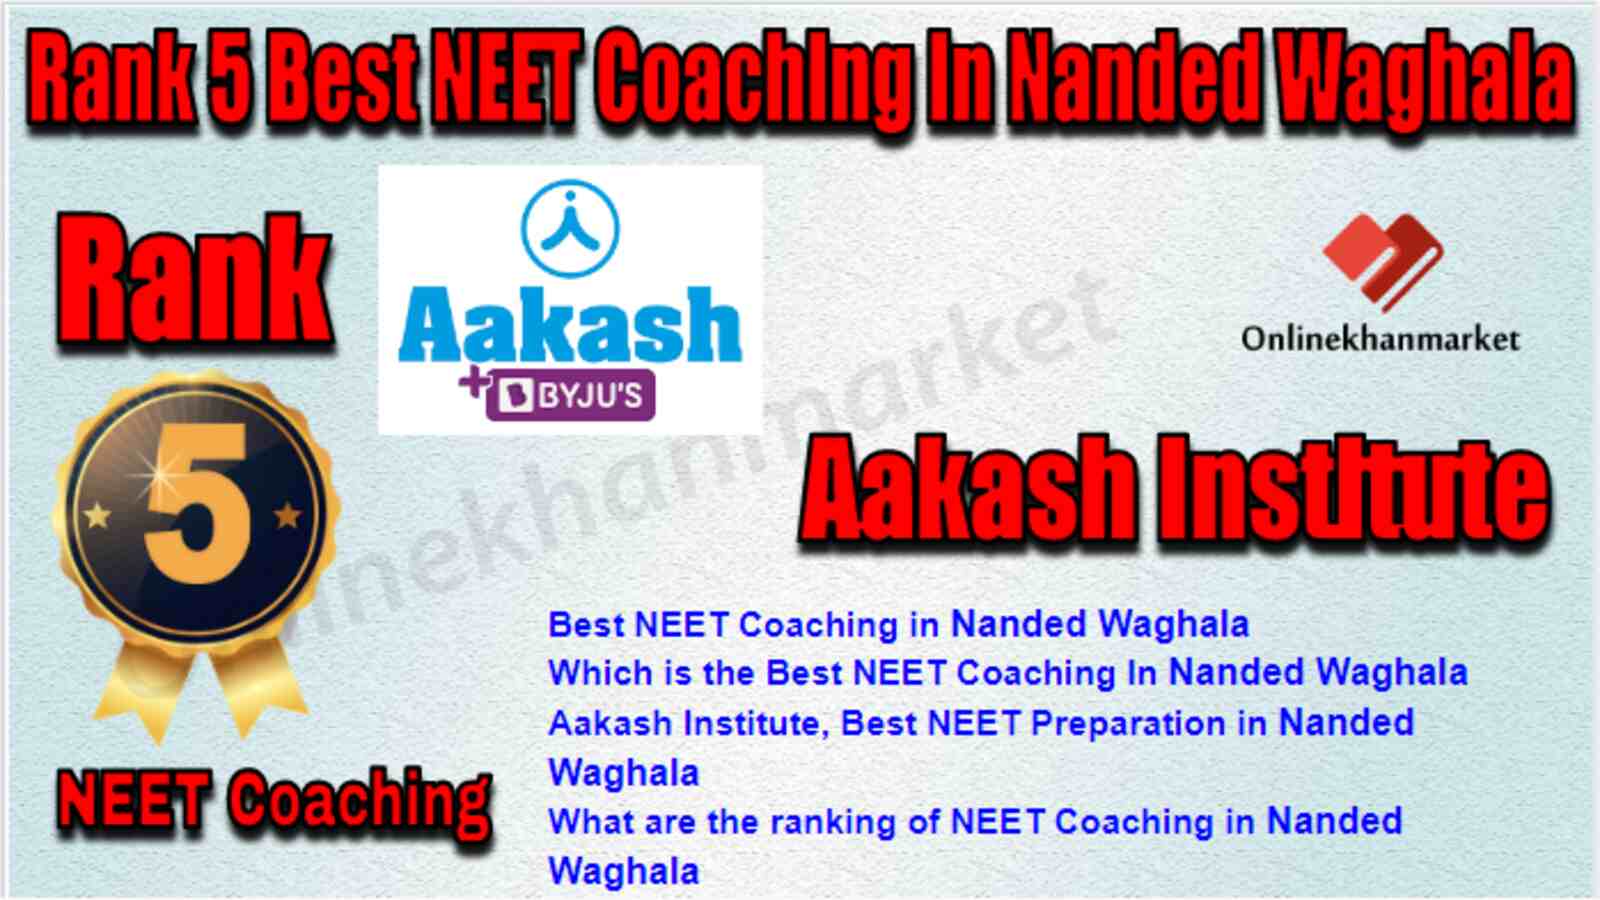 Rank 5 Best NEET Coaching in Nanded Waghala